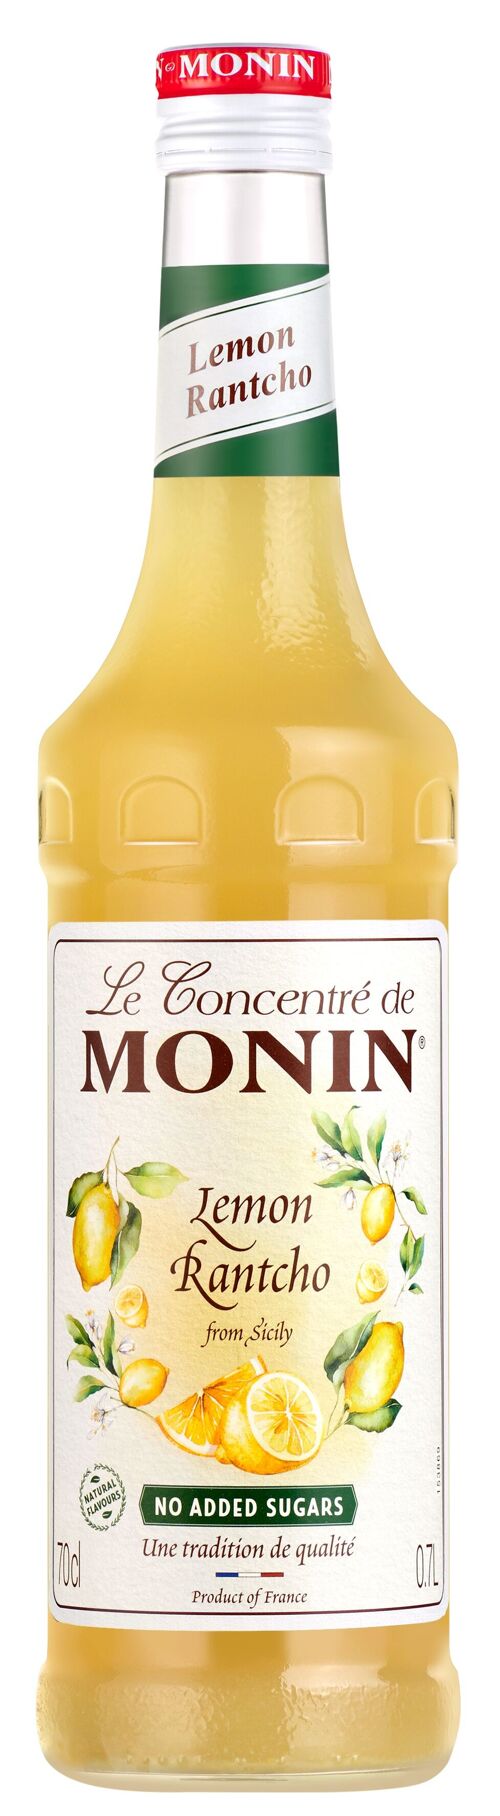 Concentré Rantcho Citron MONIN - Arômes naturels - 70cl